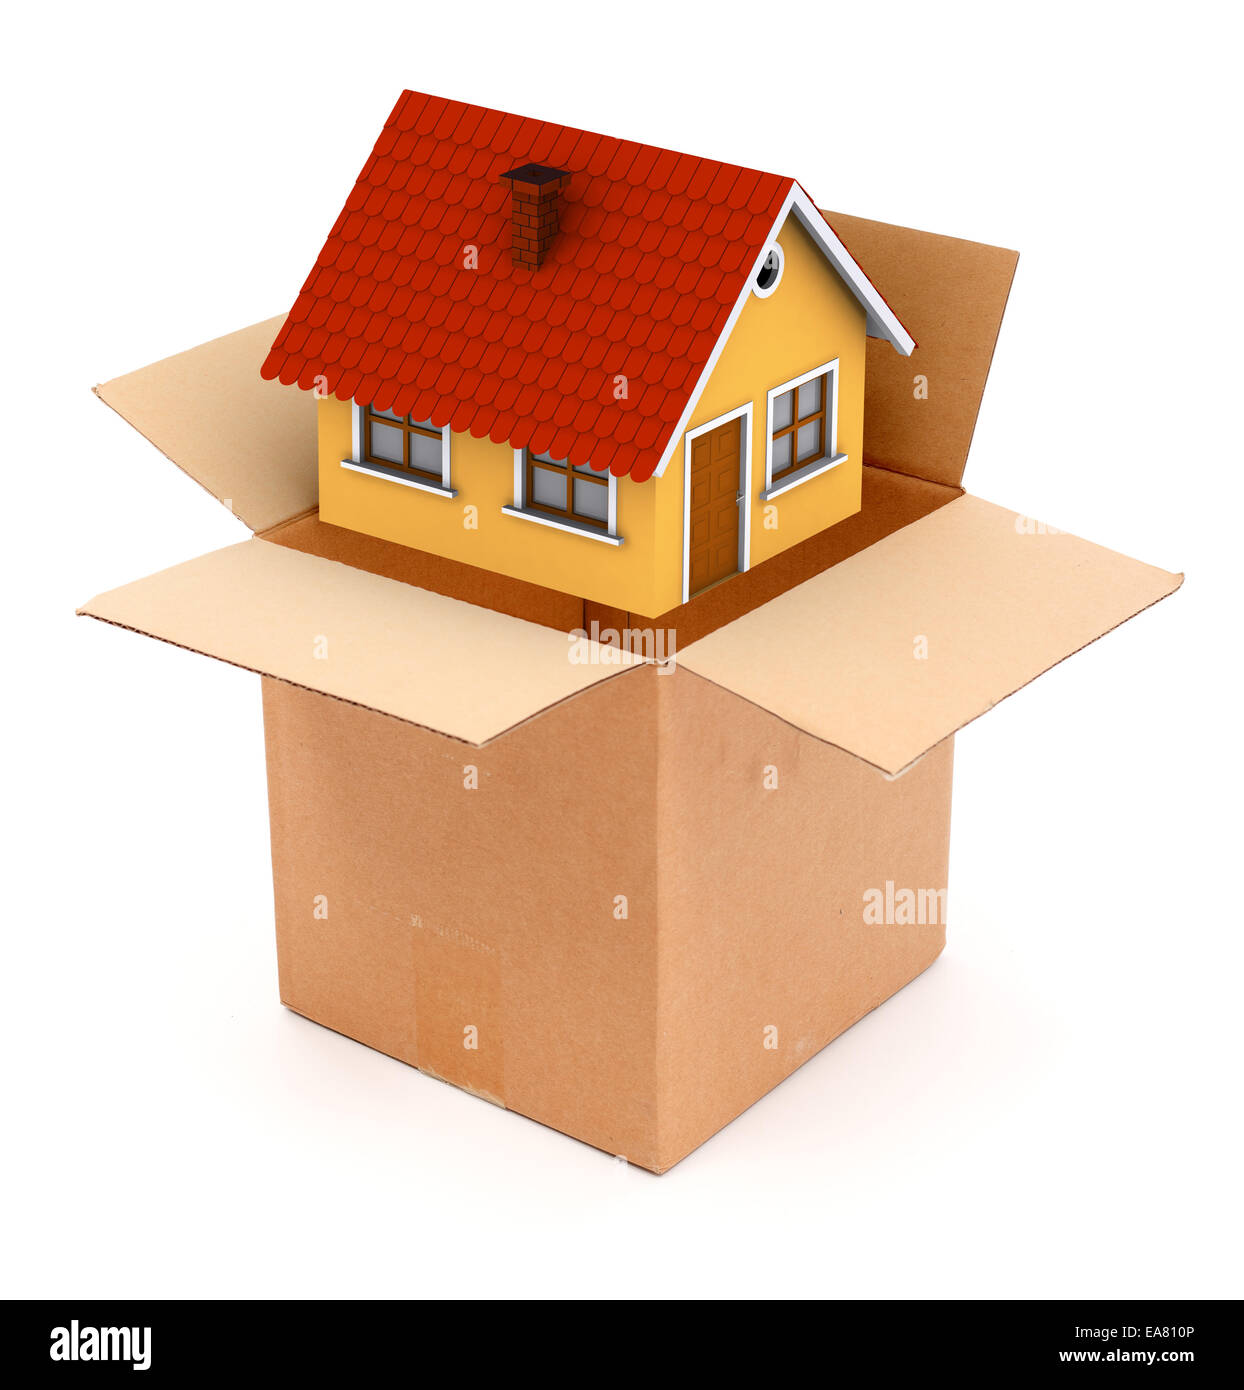 Verpackung oder ein kleines Haus in Karton auspacken. Konzeptuelle Ansicht  liefern oder ein neues Haus zu kaufen Stockfotografie - Alamy